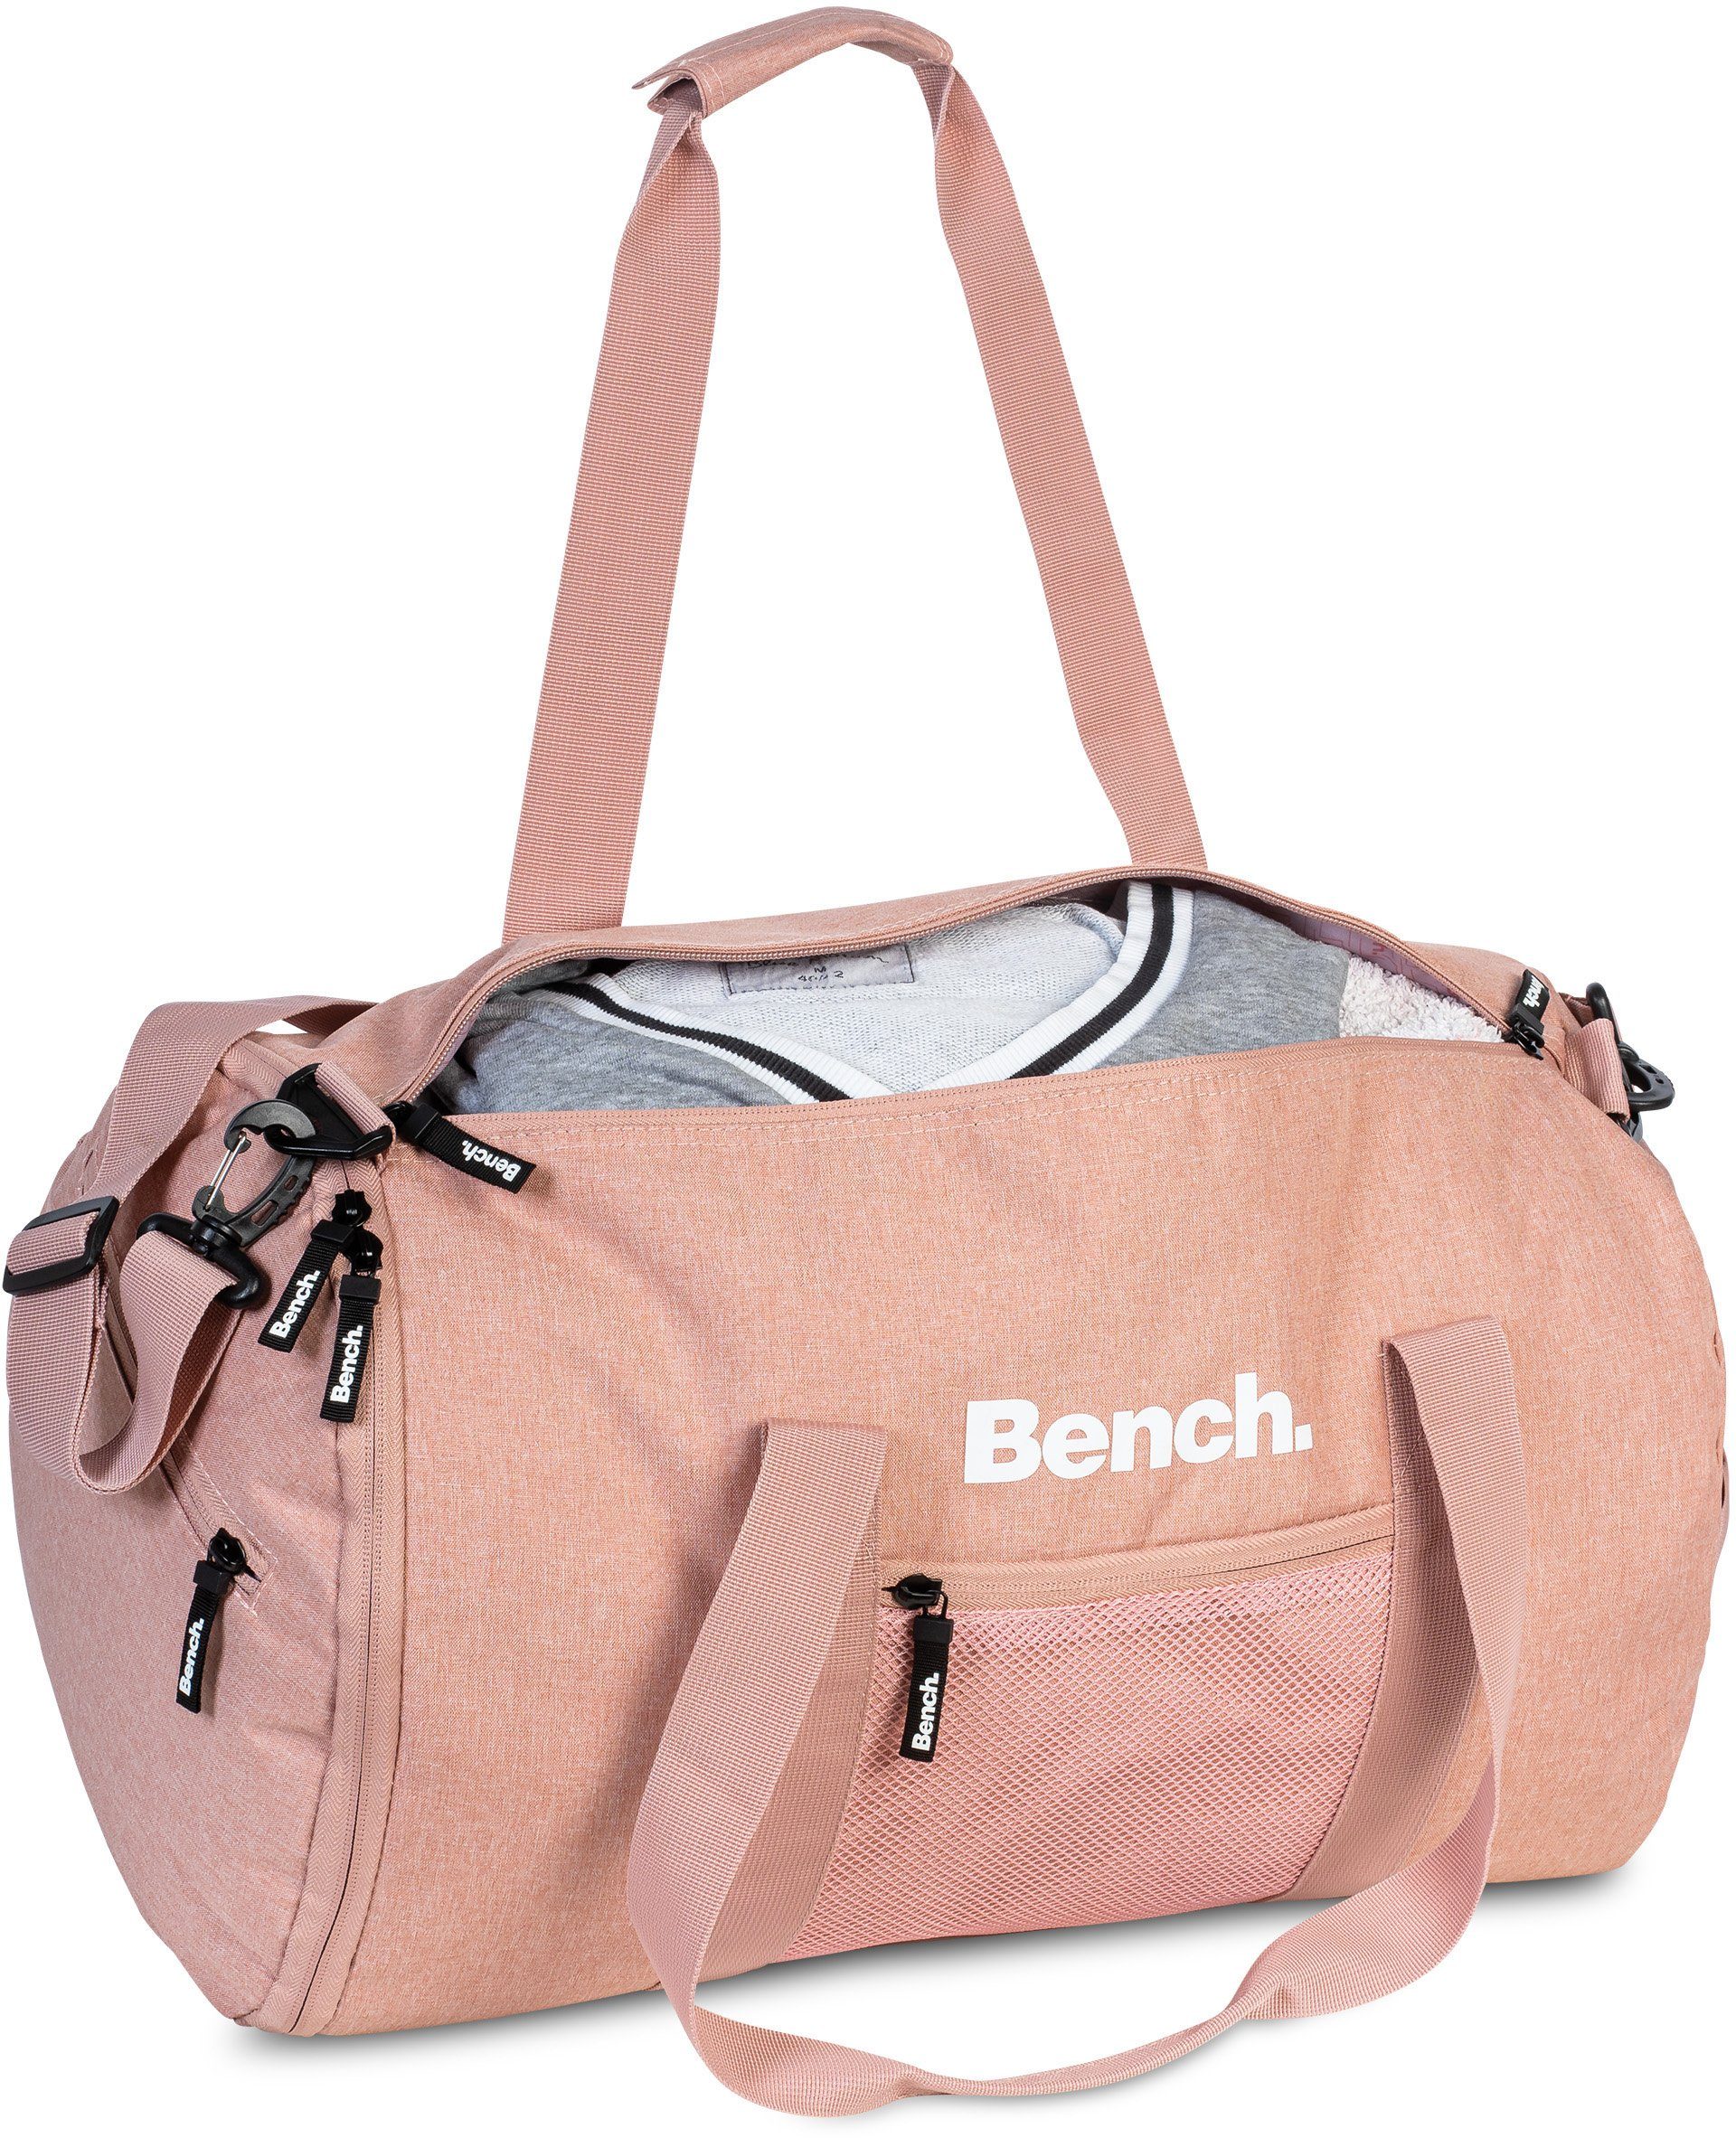 30 Bench. Sporttasche, Reisetasche rosa-rot L